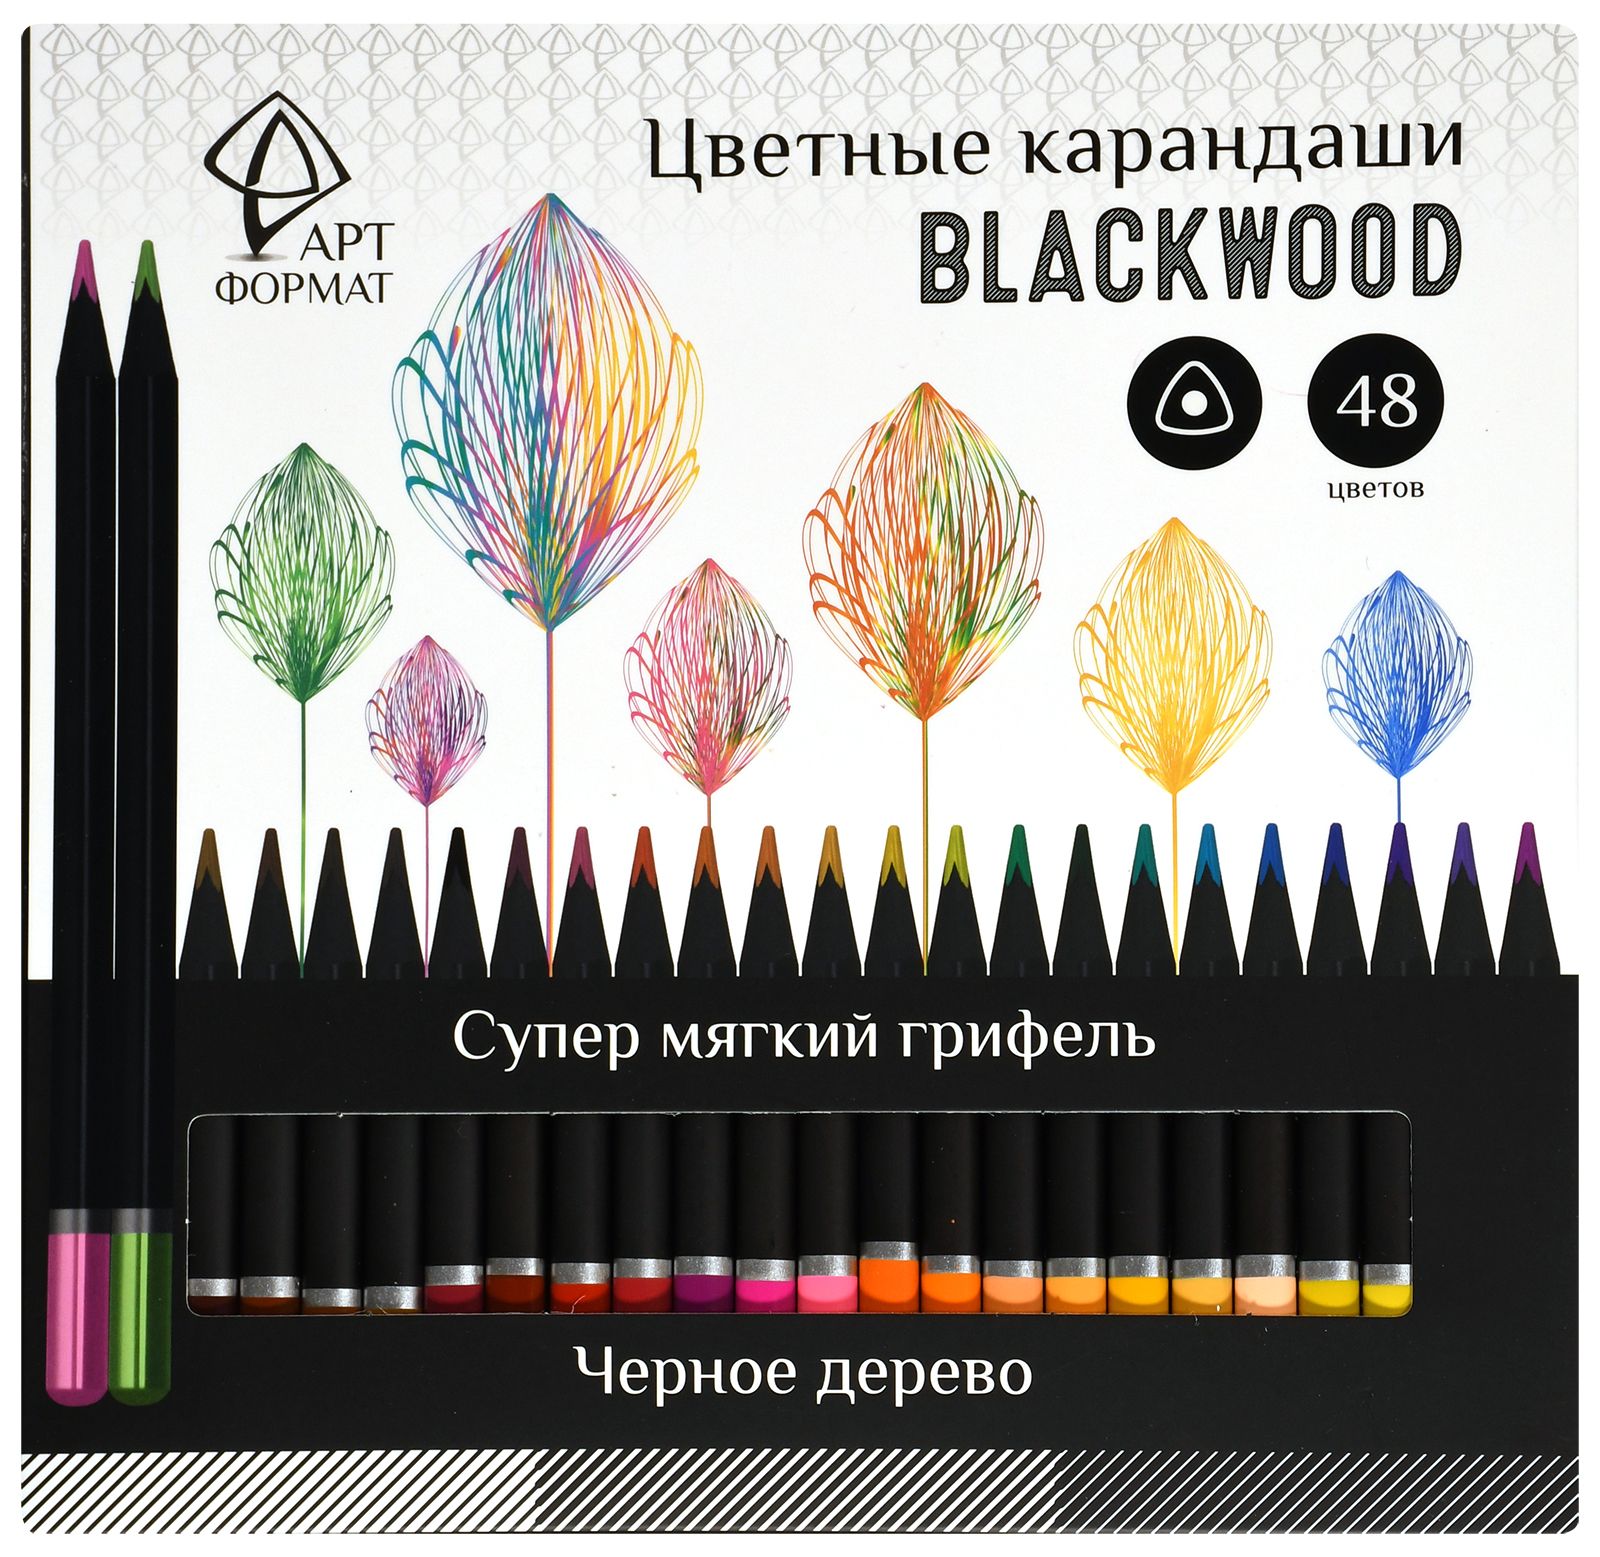     Blackwood 48 ,    